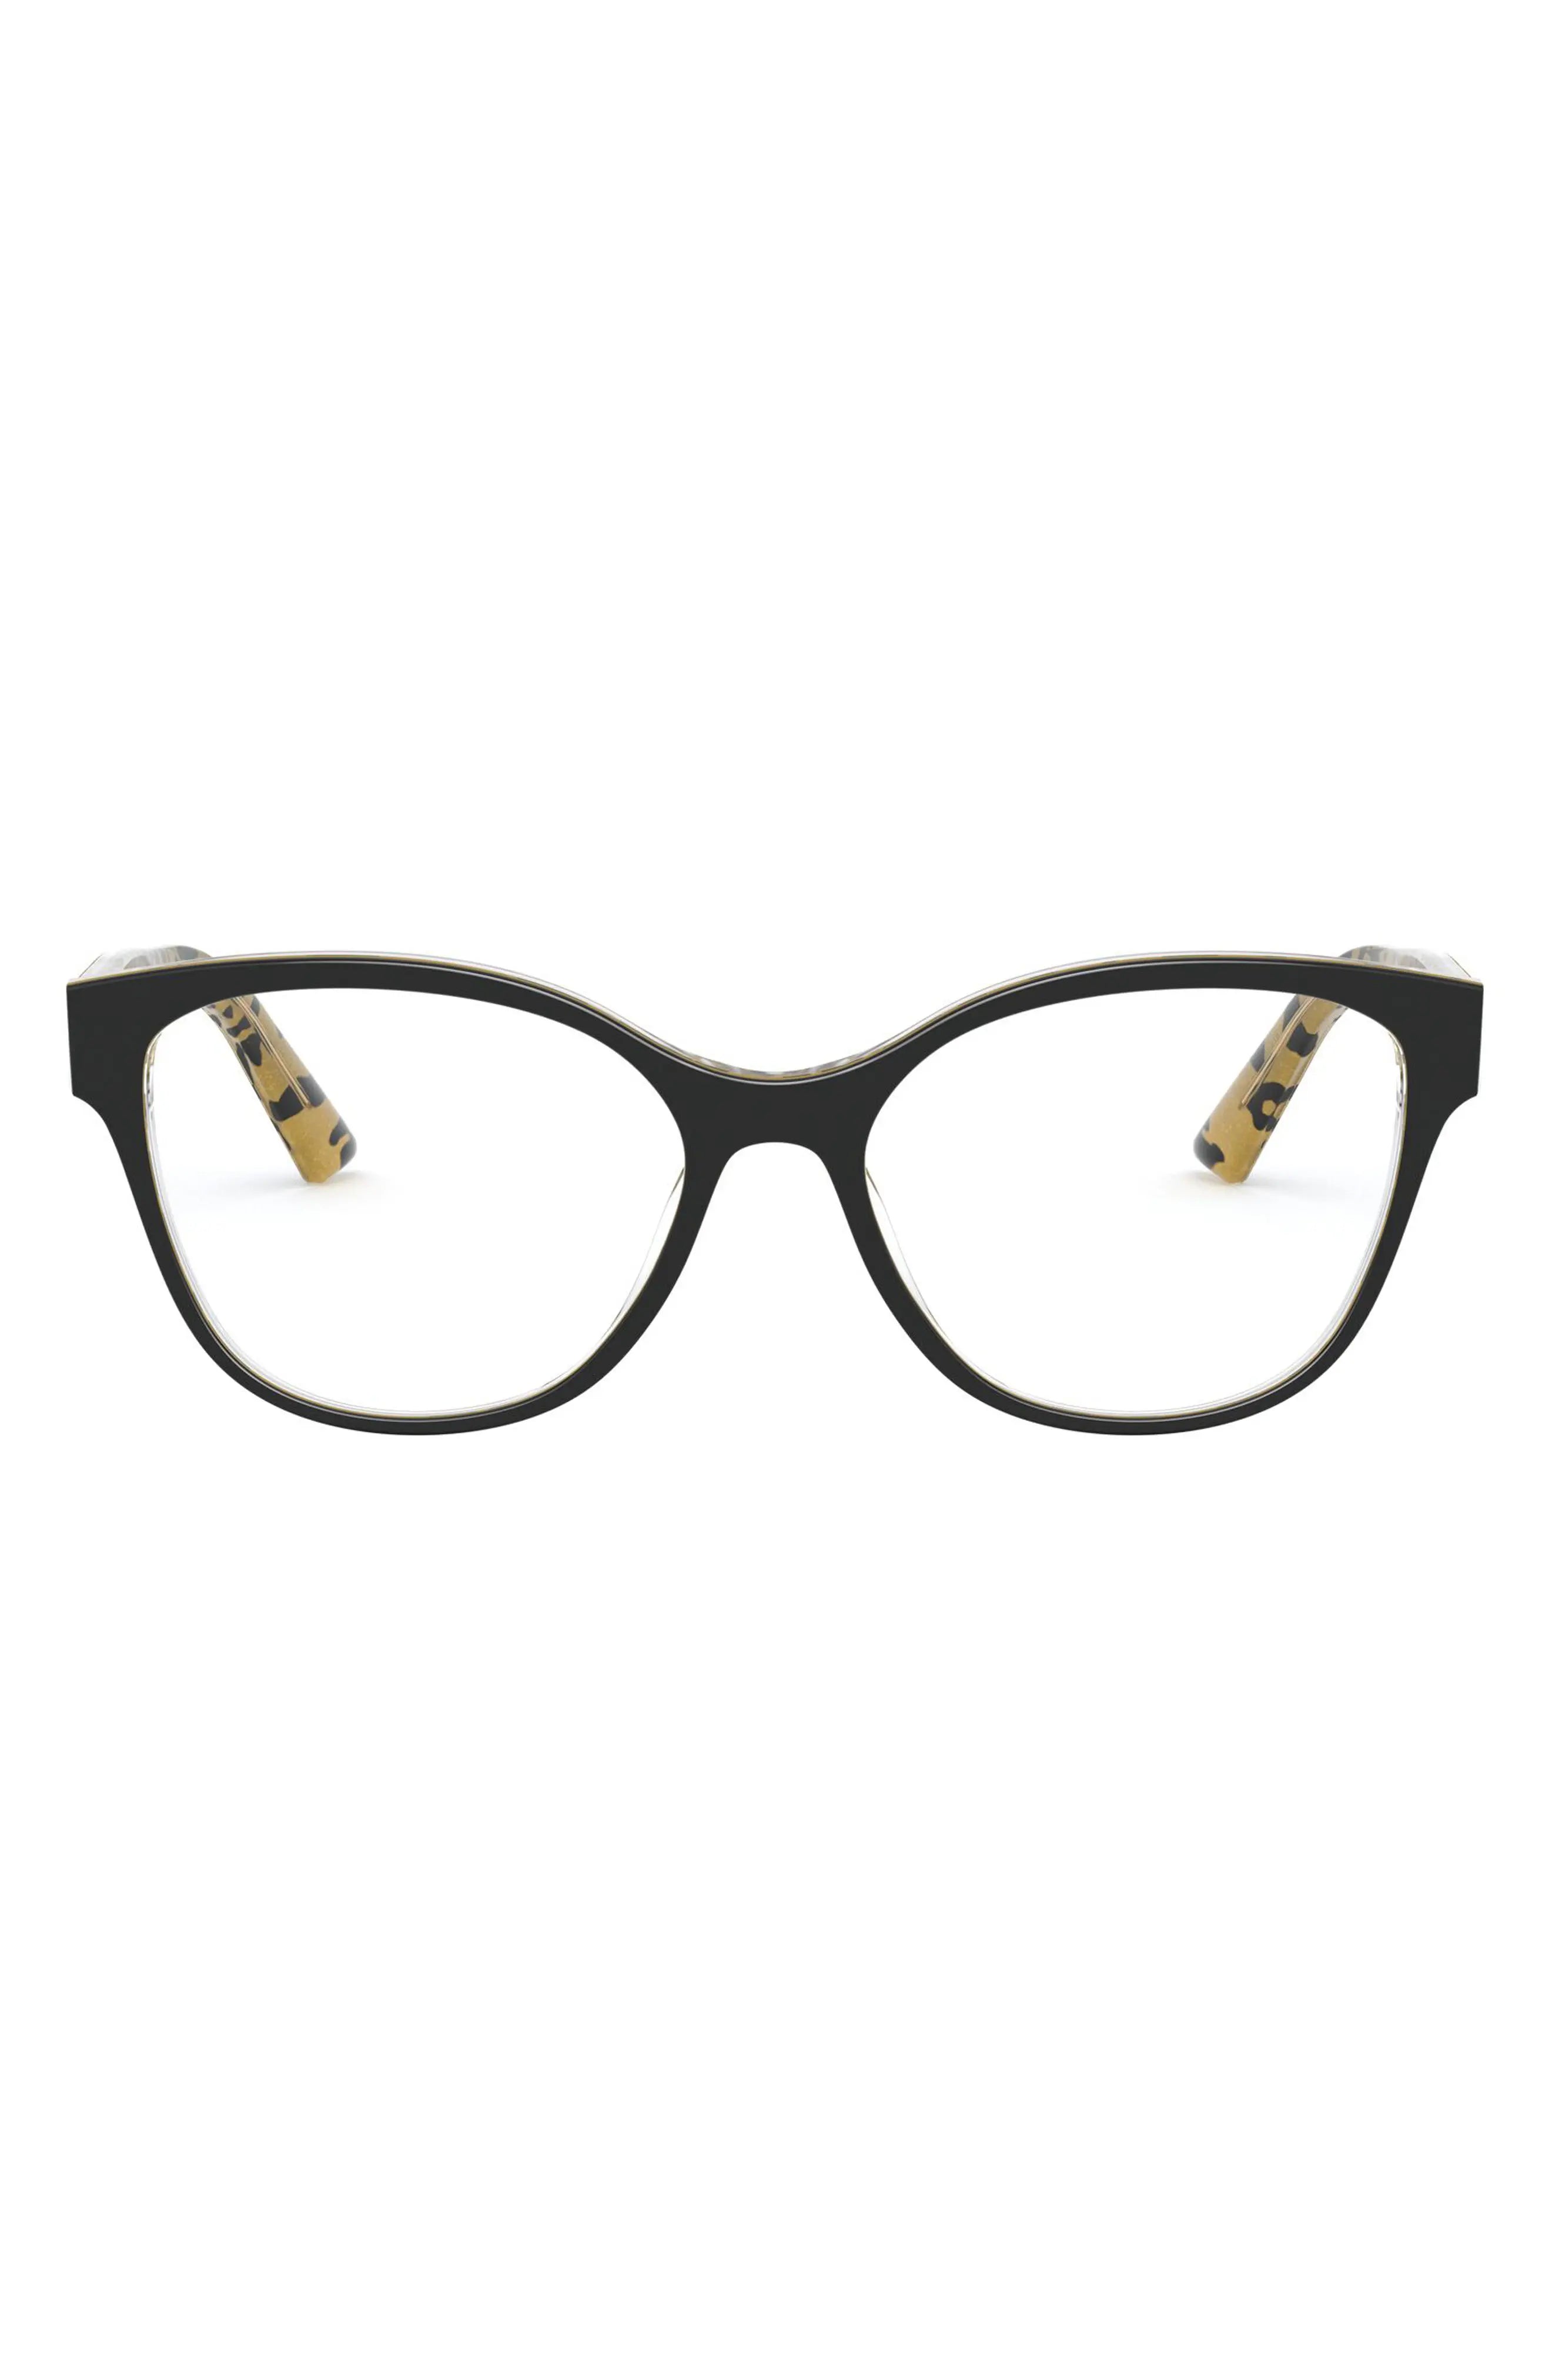 Dolce & Gabbana DG3322 3235 glasses frames - degraded